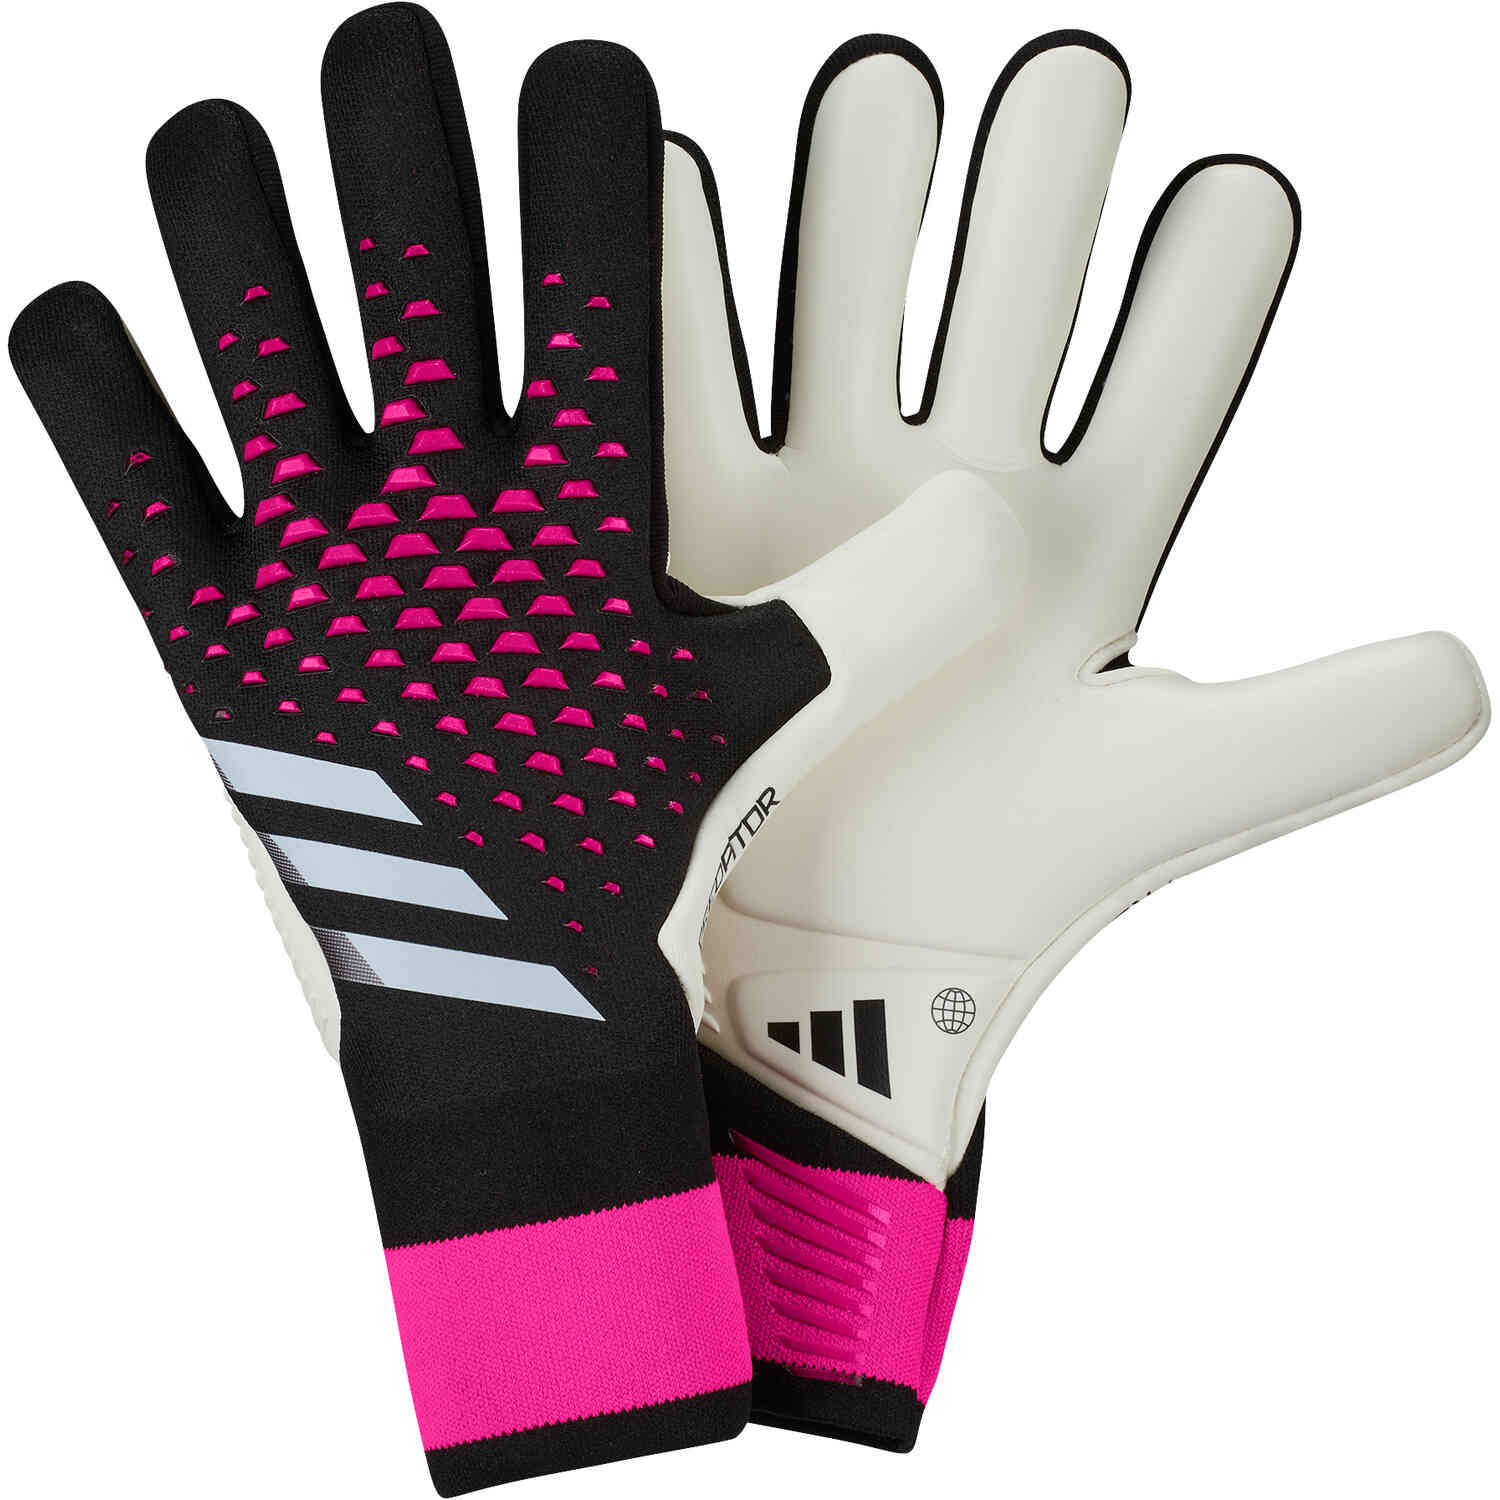 Sæt tøj væk knus Bliv ophidset adidas Predator Pro Goalkeeper Gloves - Own Your Football Pack - SoccerPro